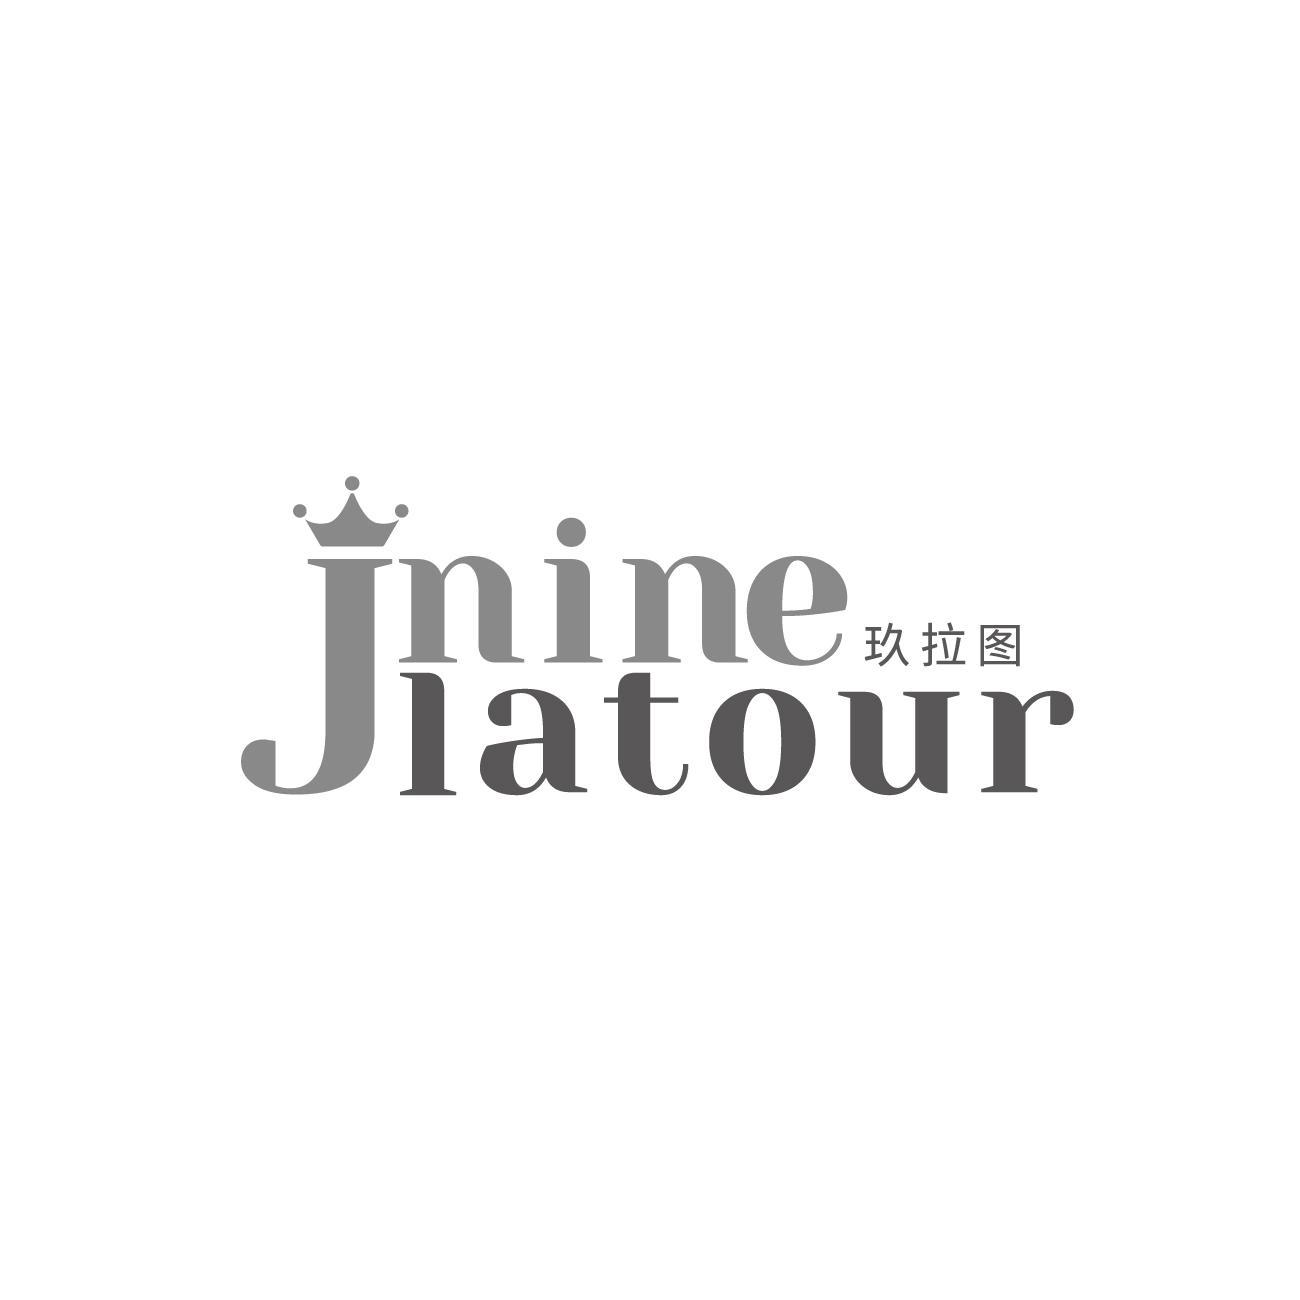 转让商标-JNINE LATOUR 玖拉图